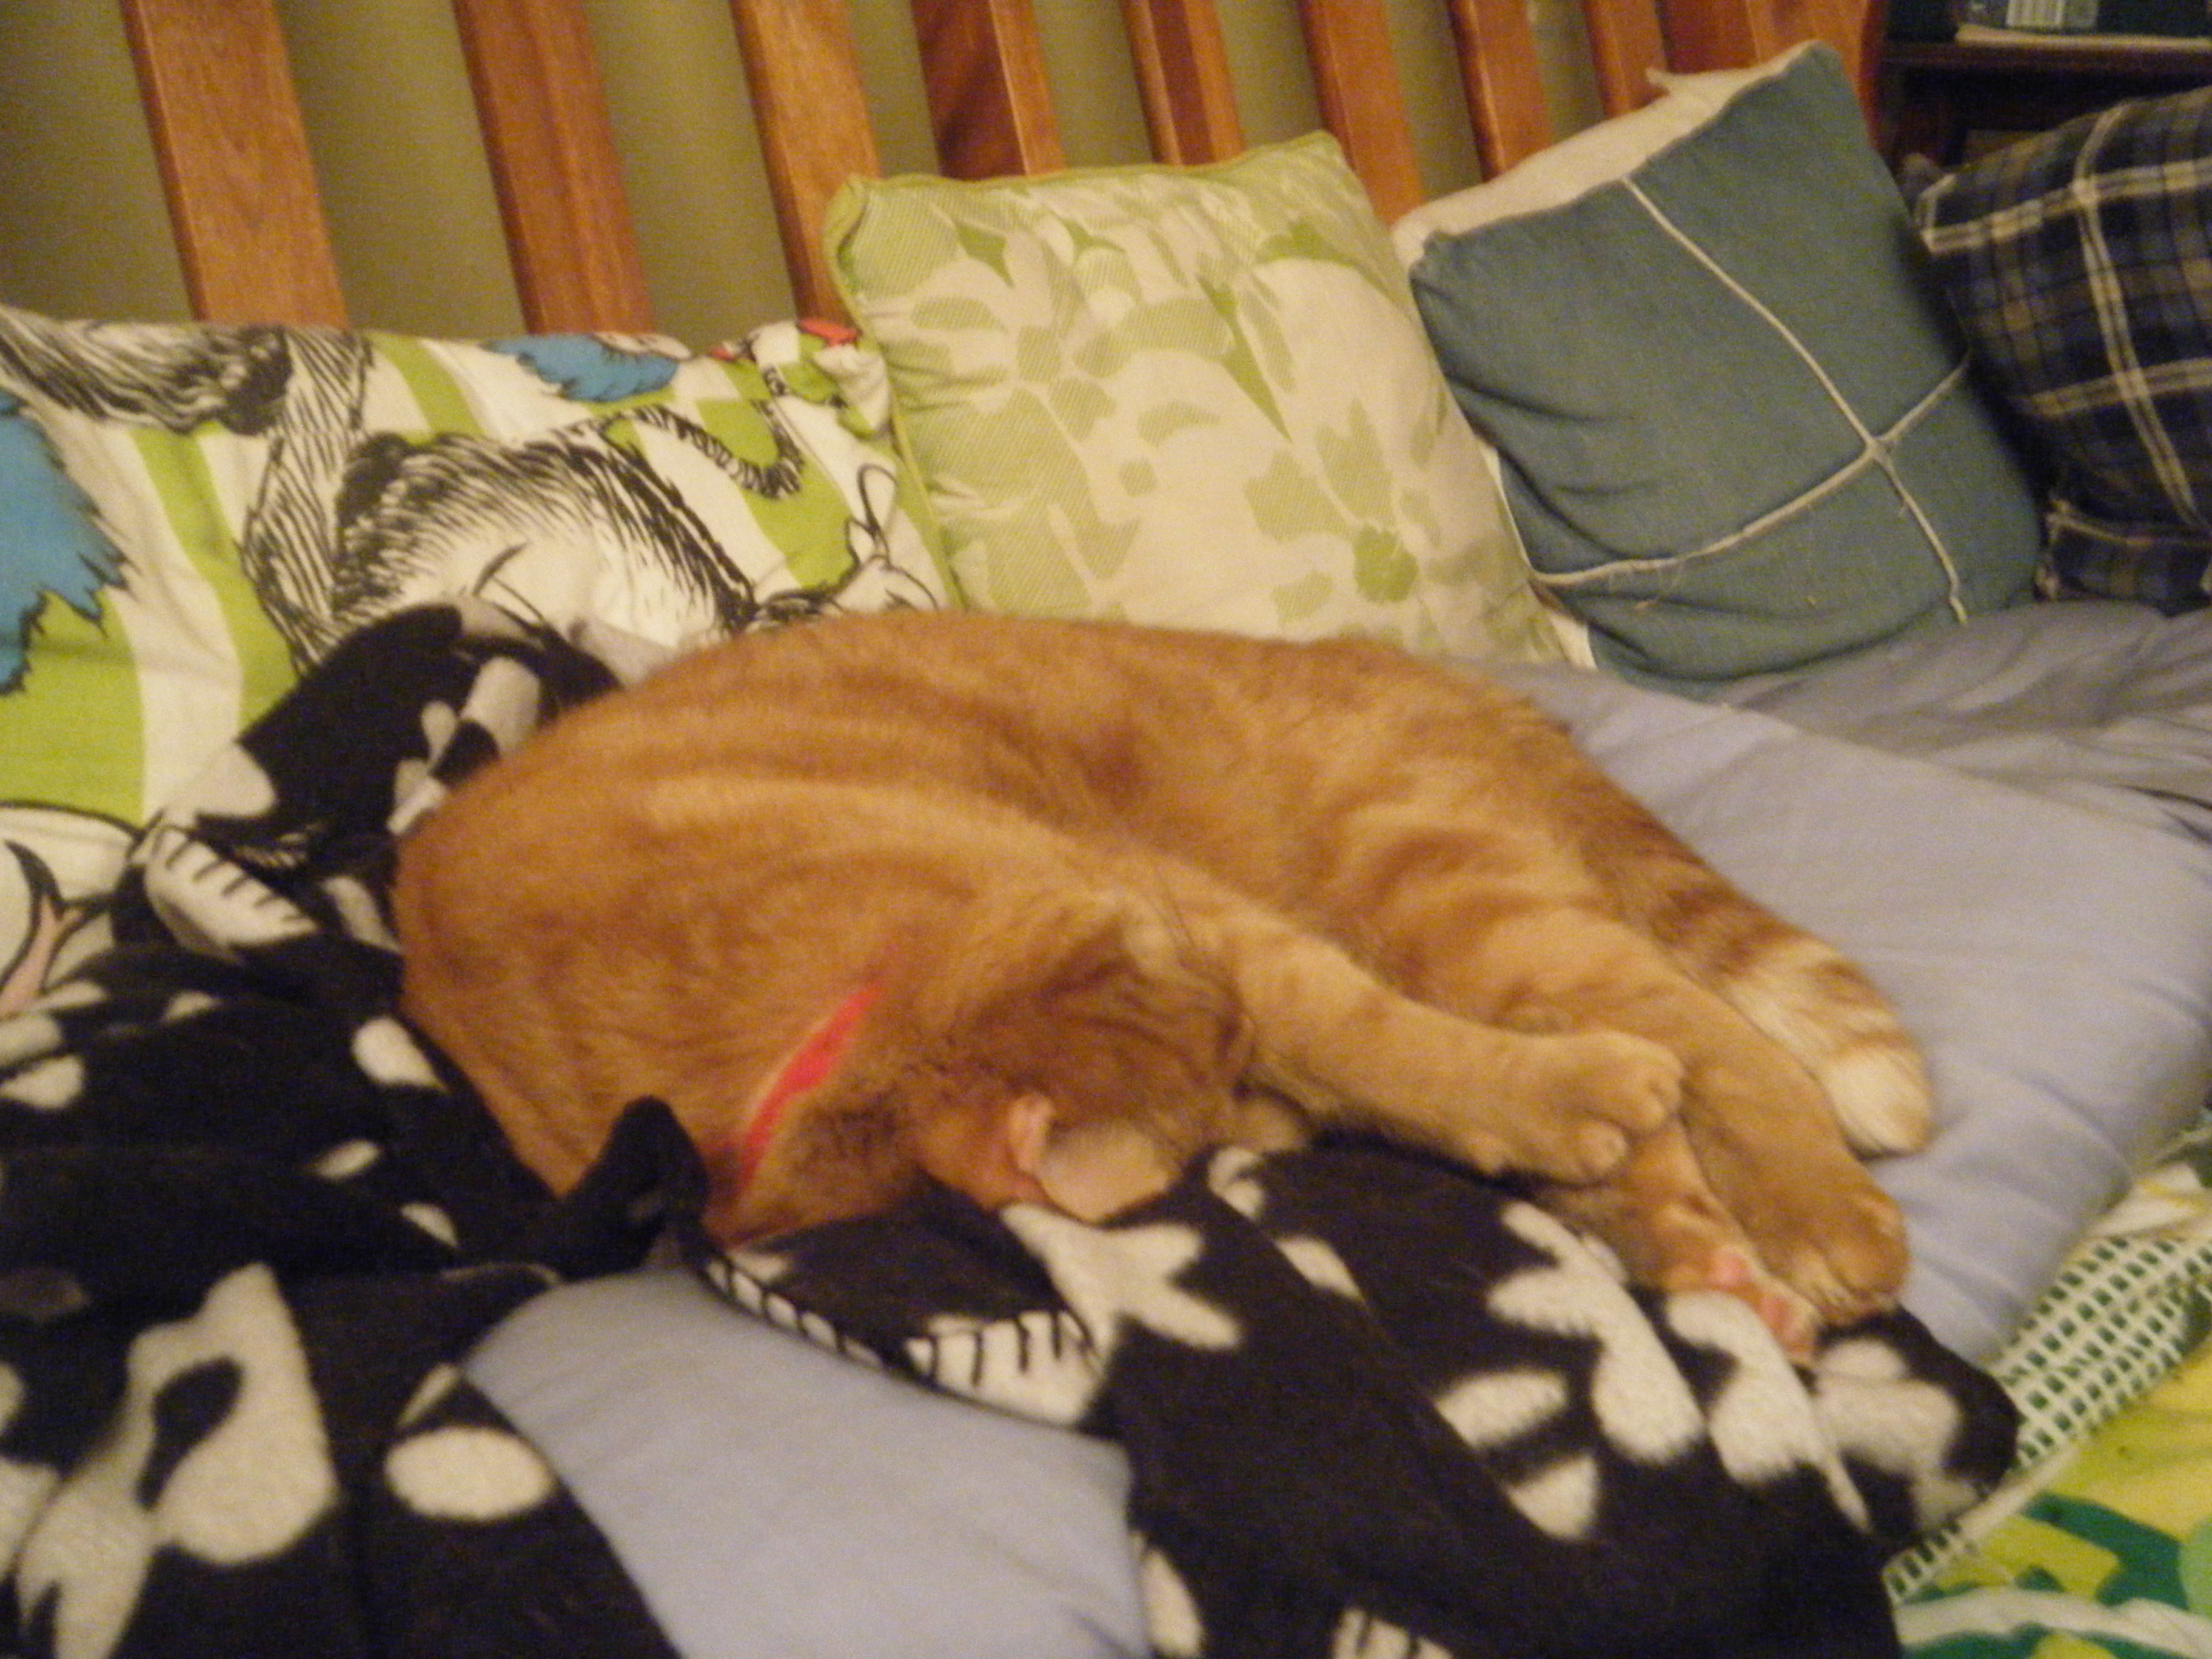 Clément le chat roulé en boule sur une jetée fleuri sur le canapé.